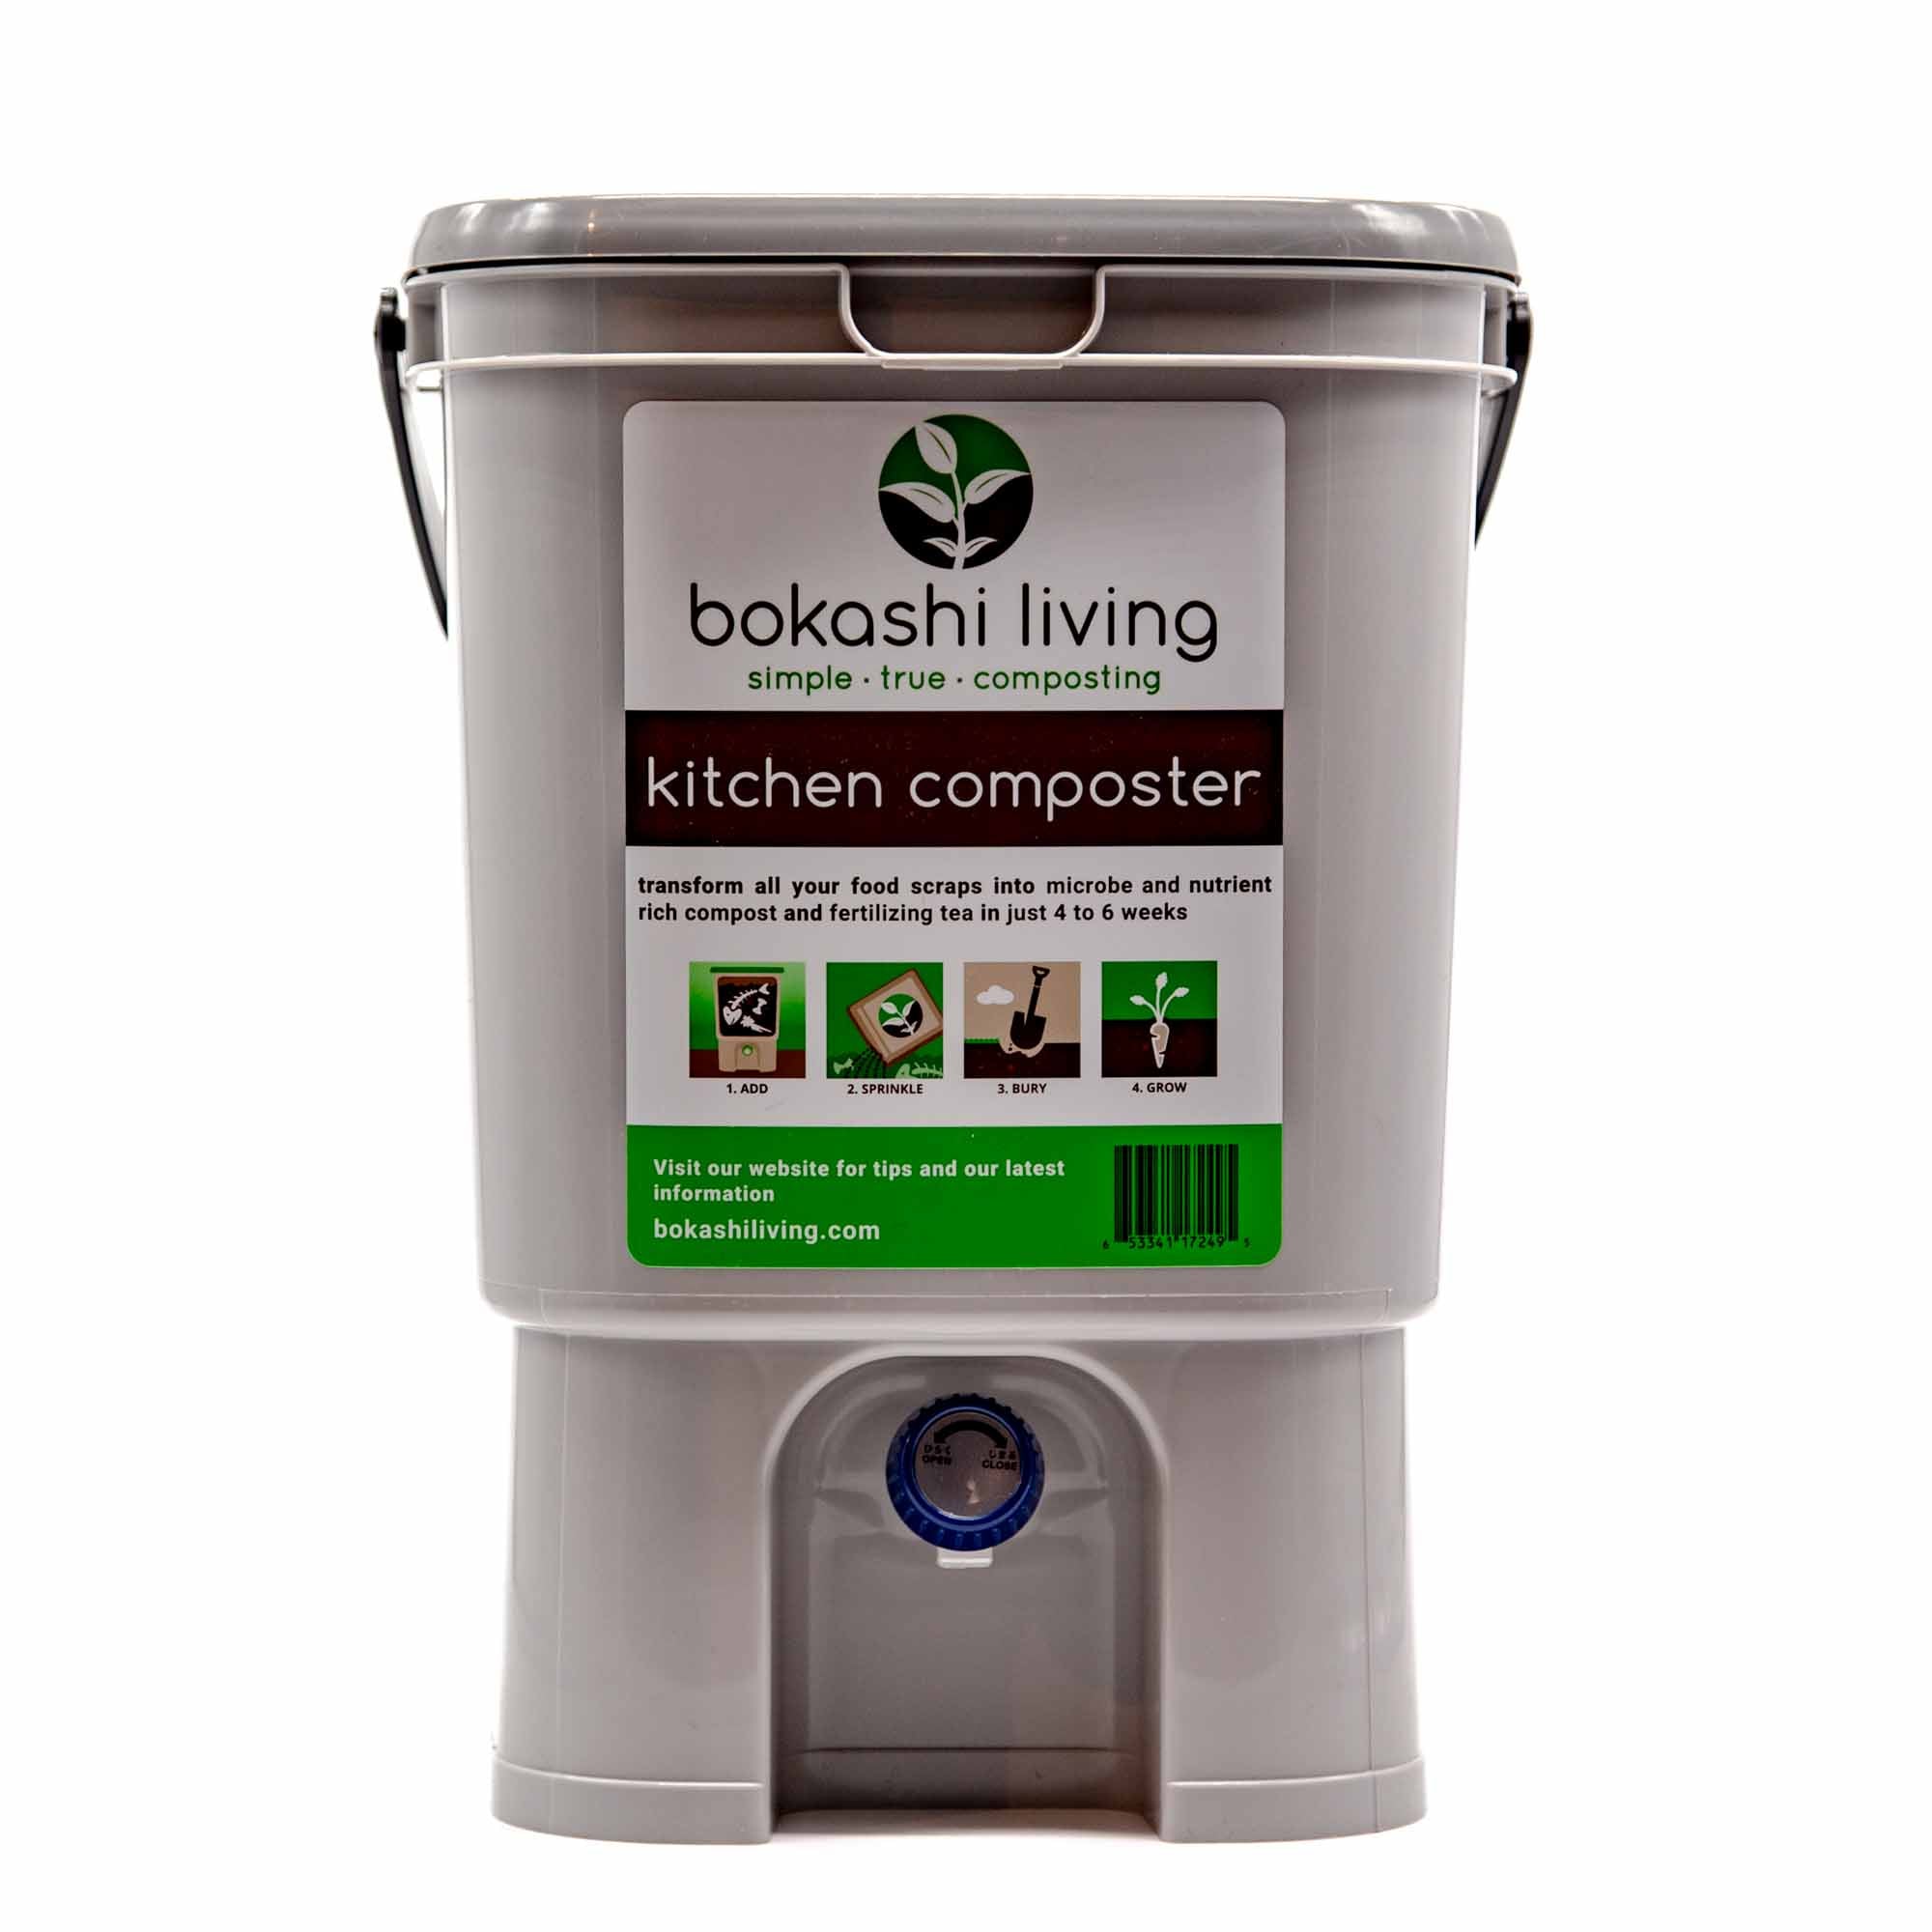 Bâton Charbon Binchotan Certifié de Wakayama - Bokashi Compost